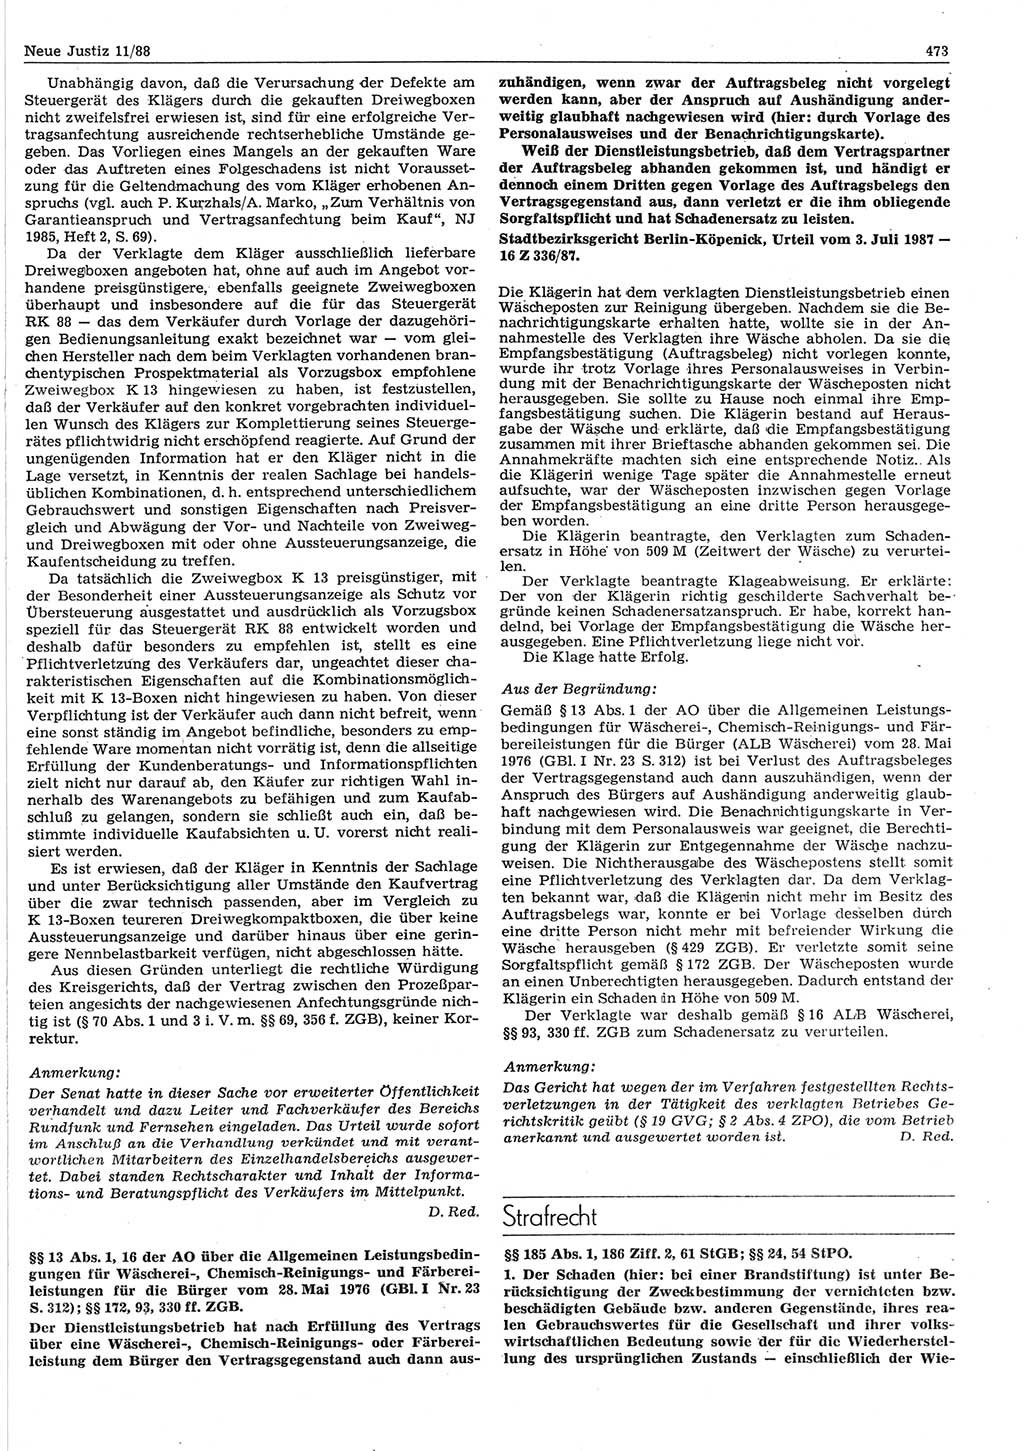 Neue Justiz (NJ), Zeitschrift für sozialistisches Recht und Gesetzlichkeit [Deutsche Demokratische Republik (DDR)], 42. Jahrgang 1988, Seite 473 (NJ DDR 1988, S. 473)